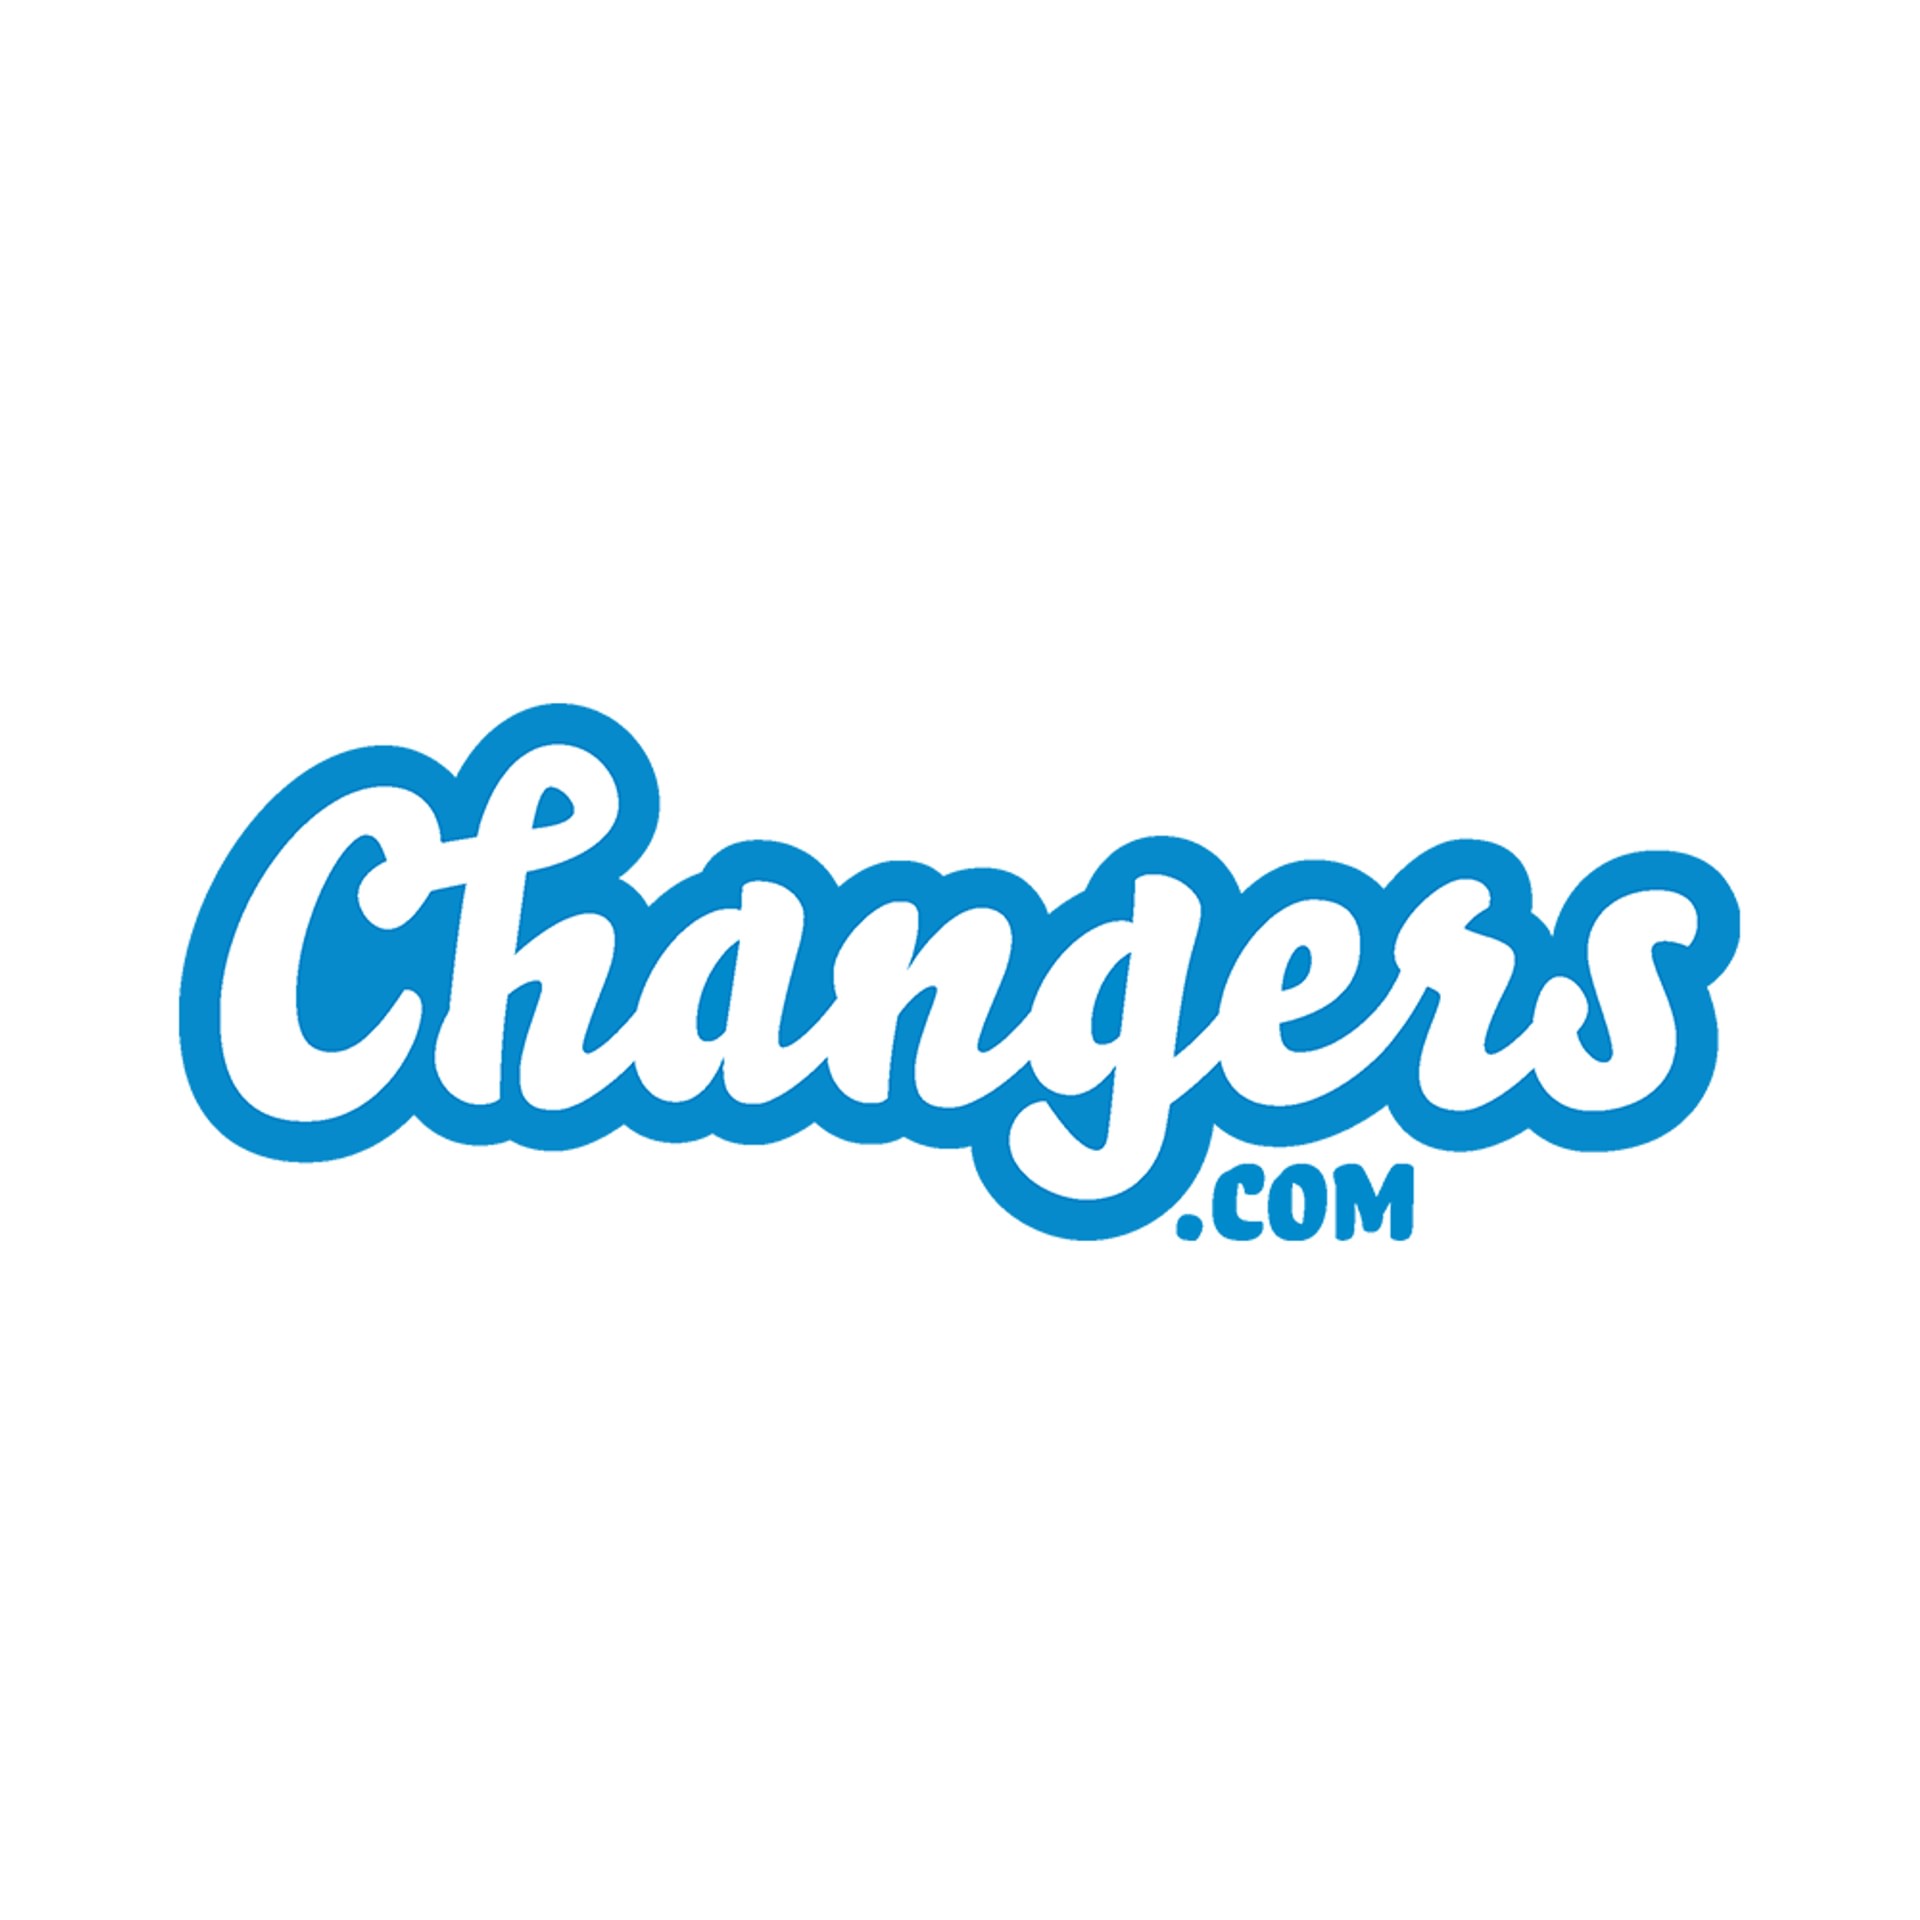 Changers website